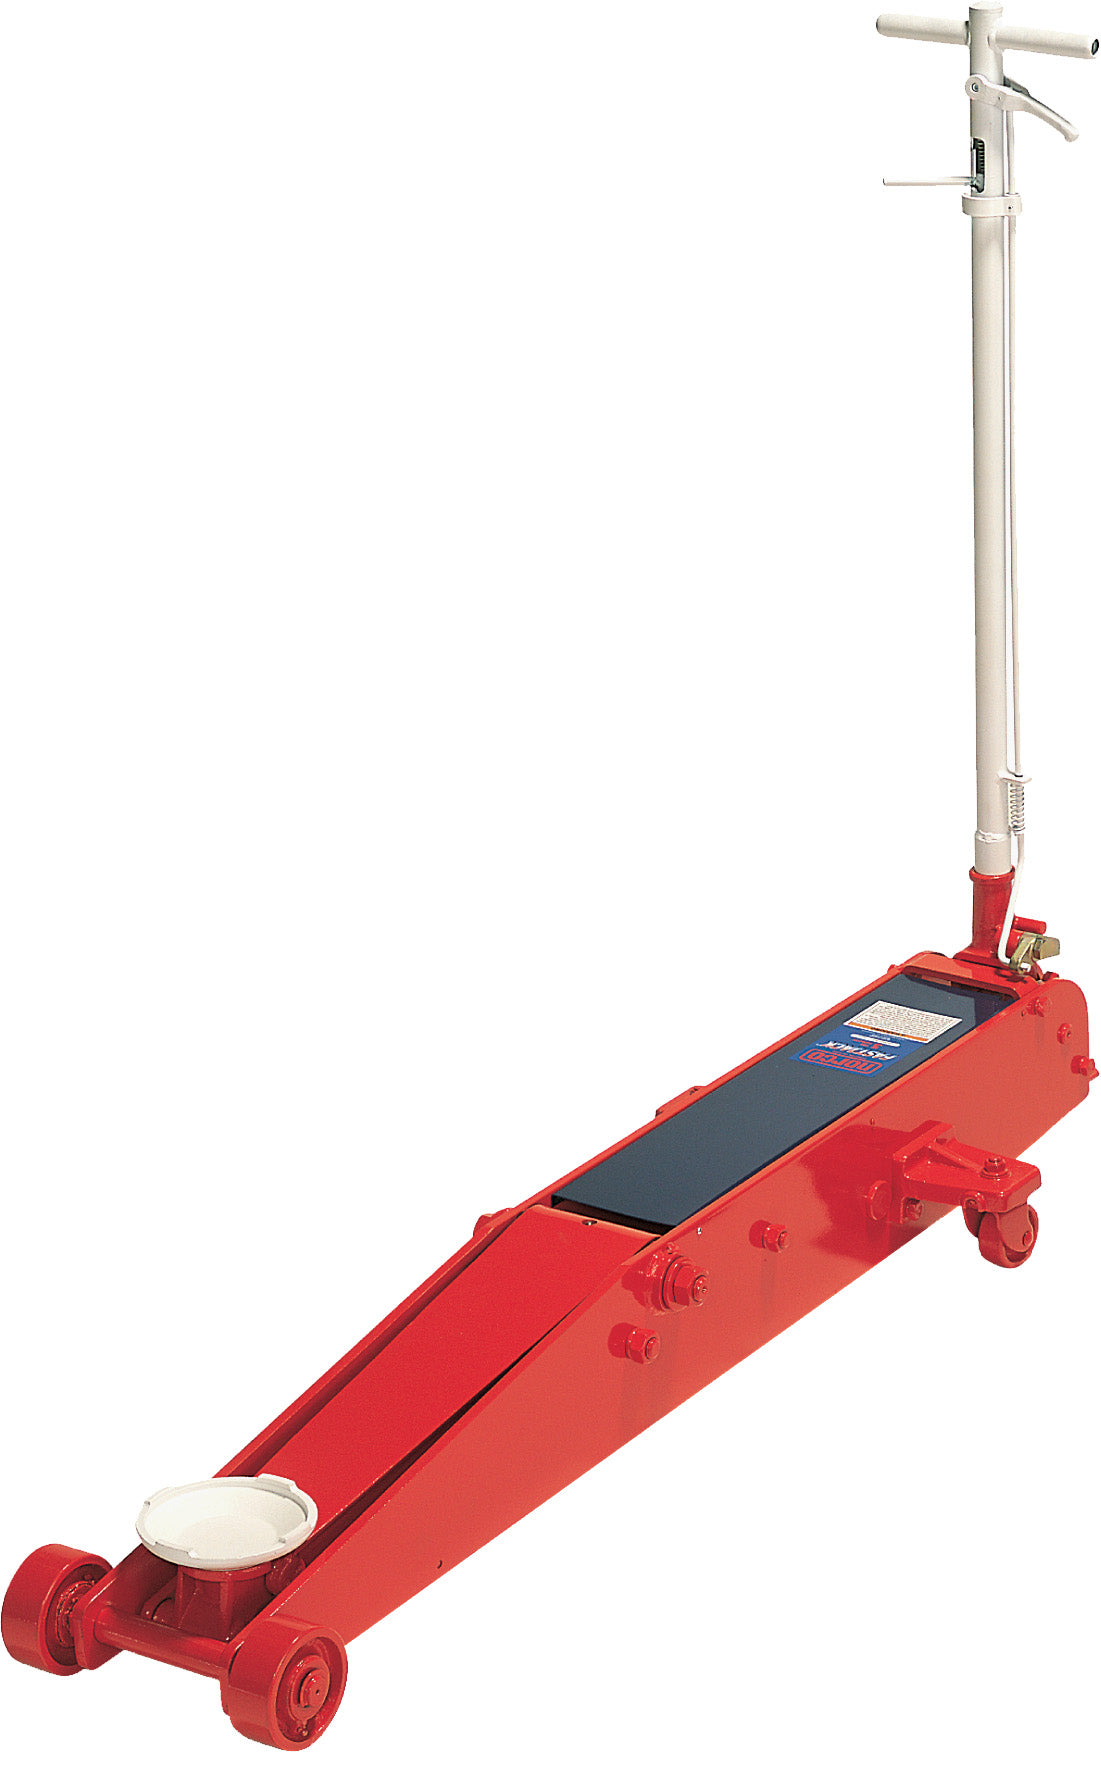 Norco Professional Lifting Equipment 71500G Ton Capacity Floor Jack – MPR  Tools  Equipment